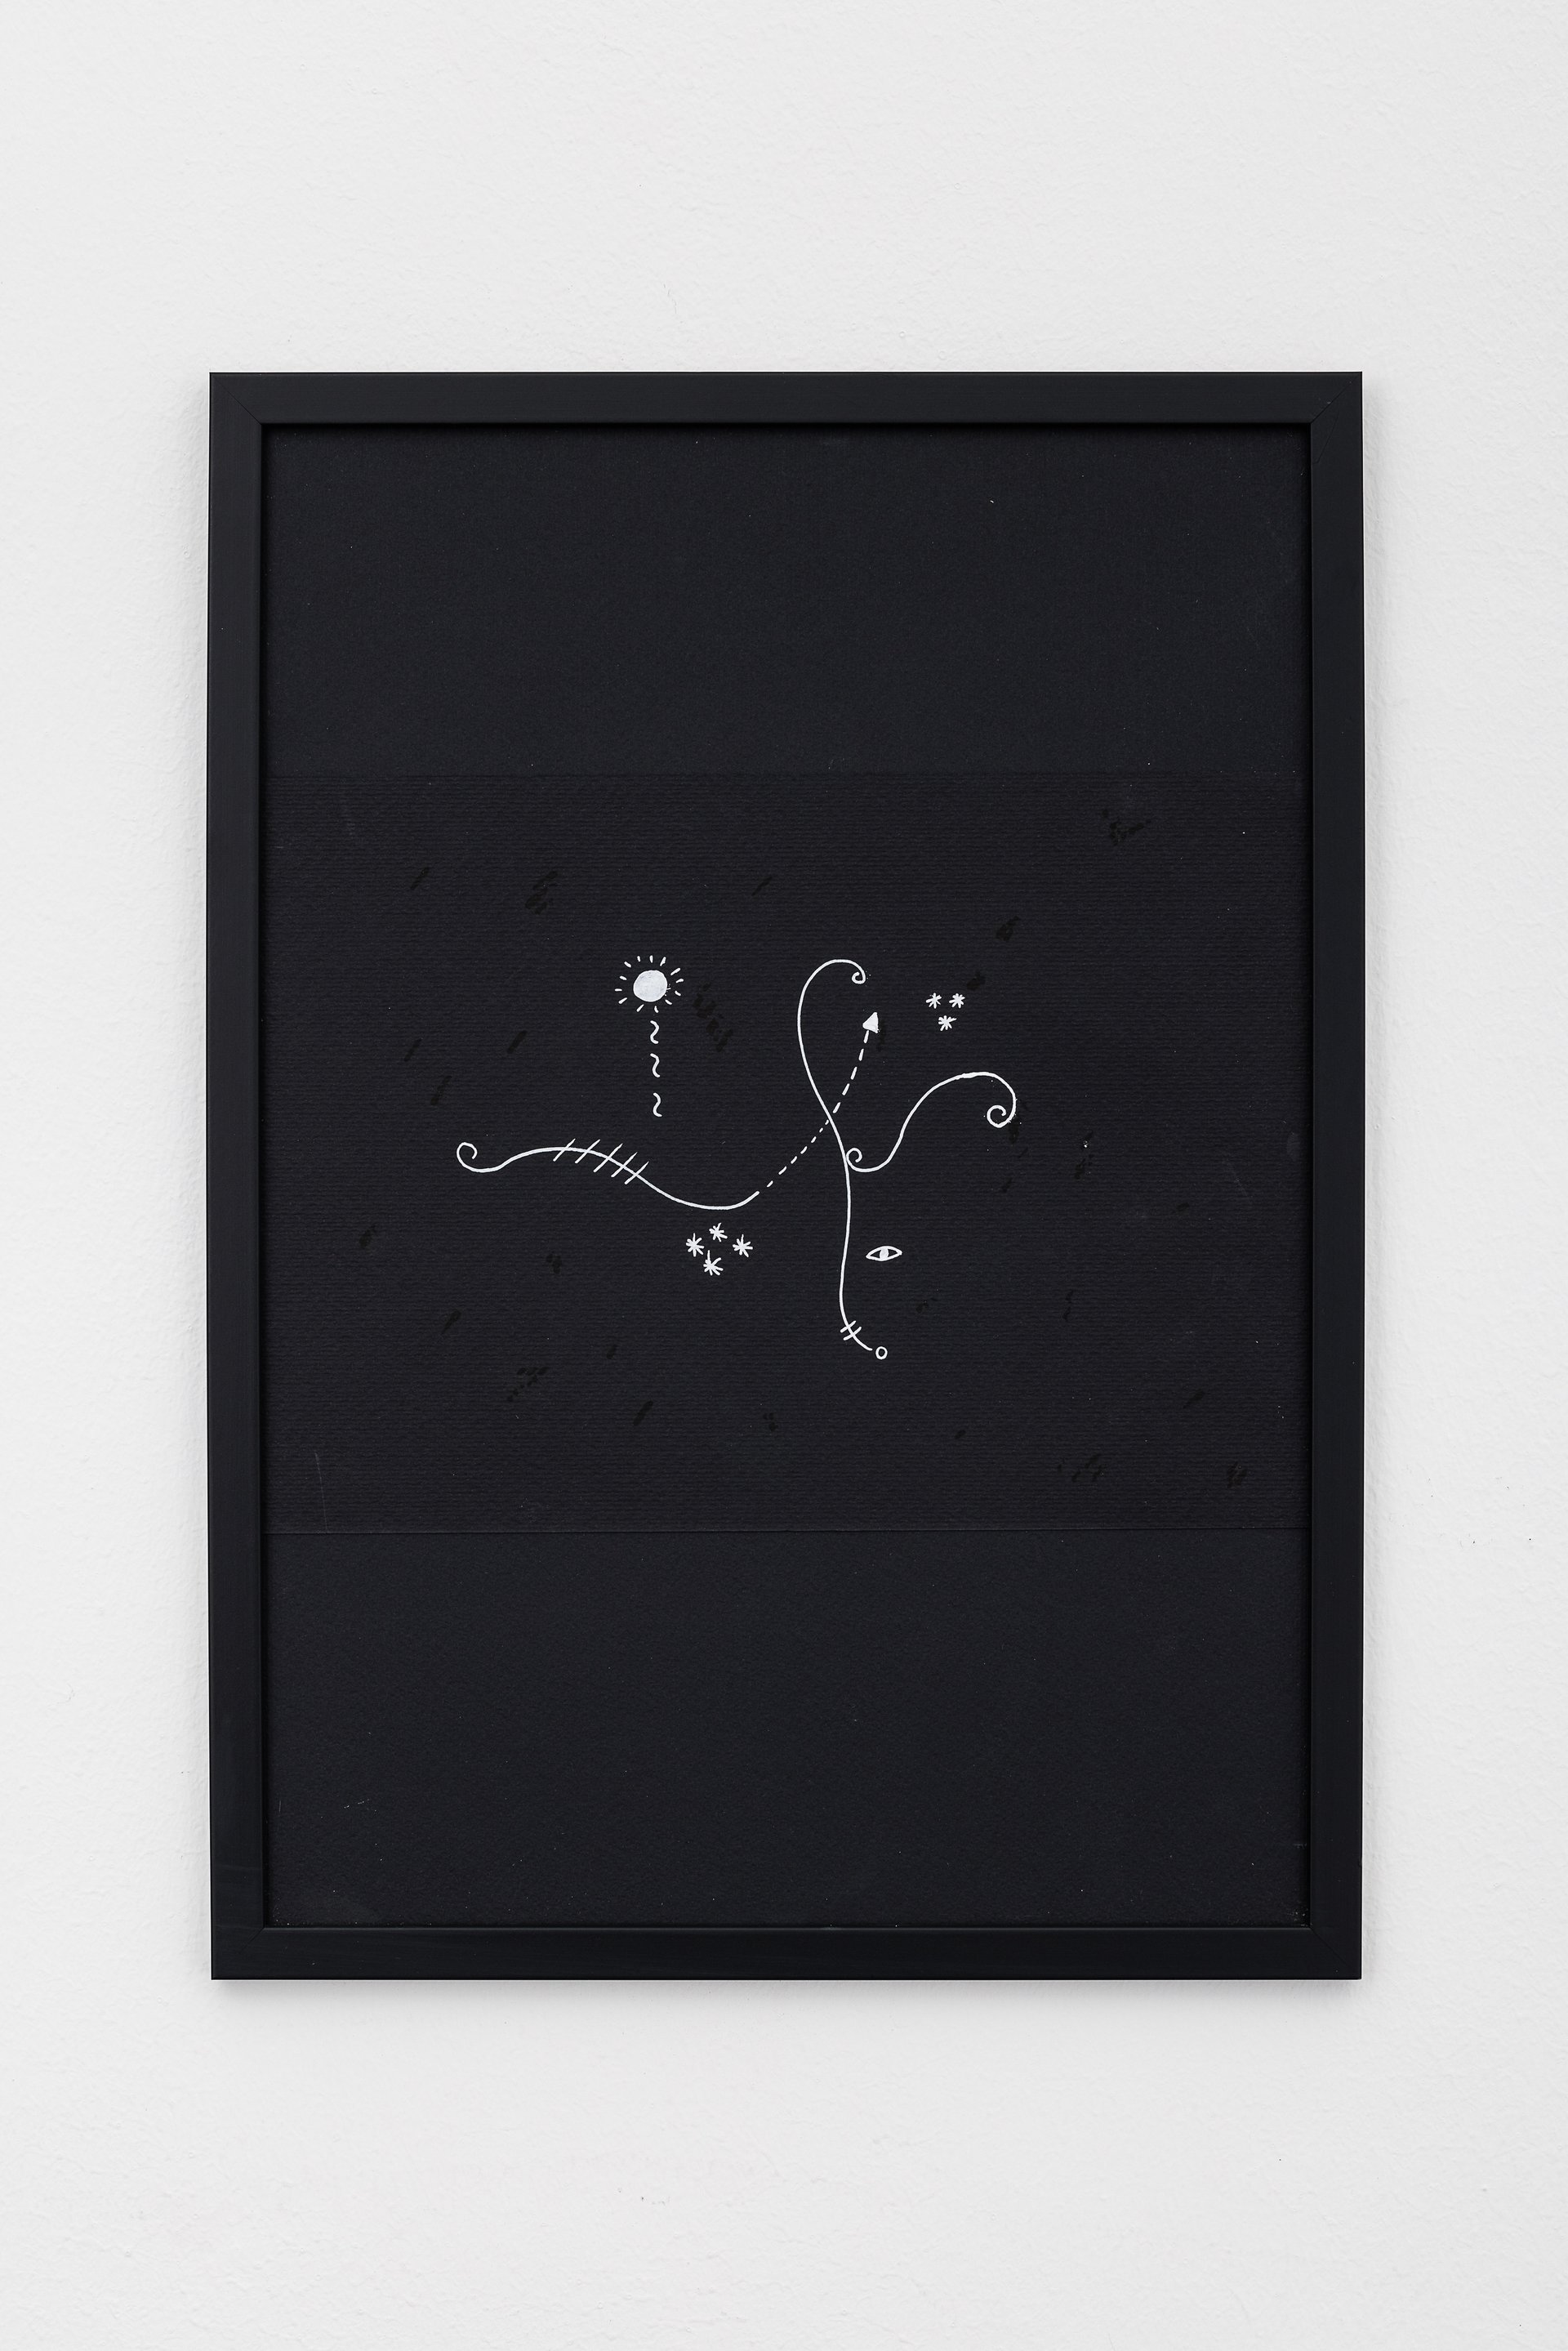 Melika Ngombe KolongoCrossroads #01, 2022Acrylic pen on paper42 x 29,7 cm (framed)